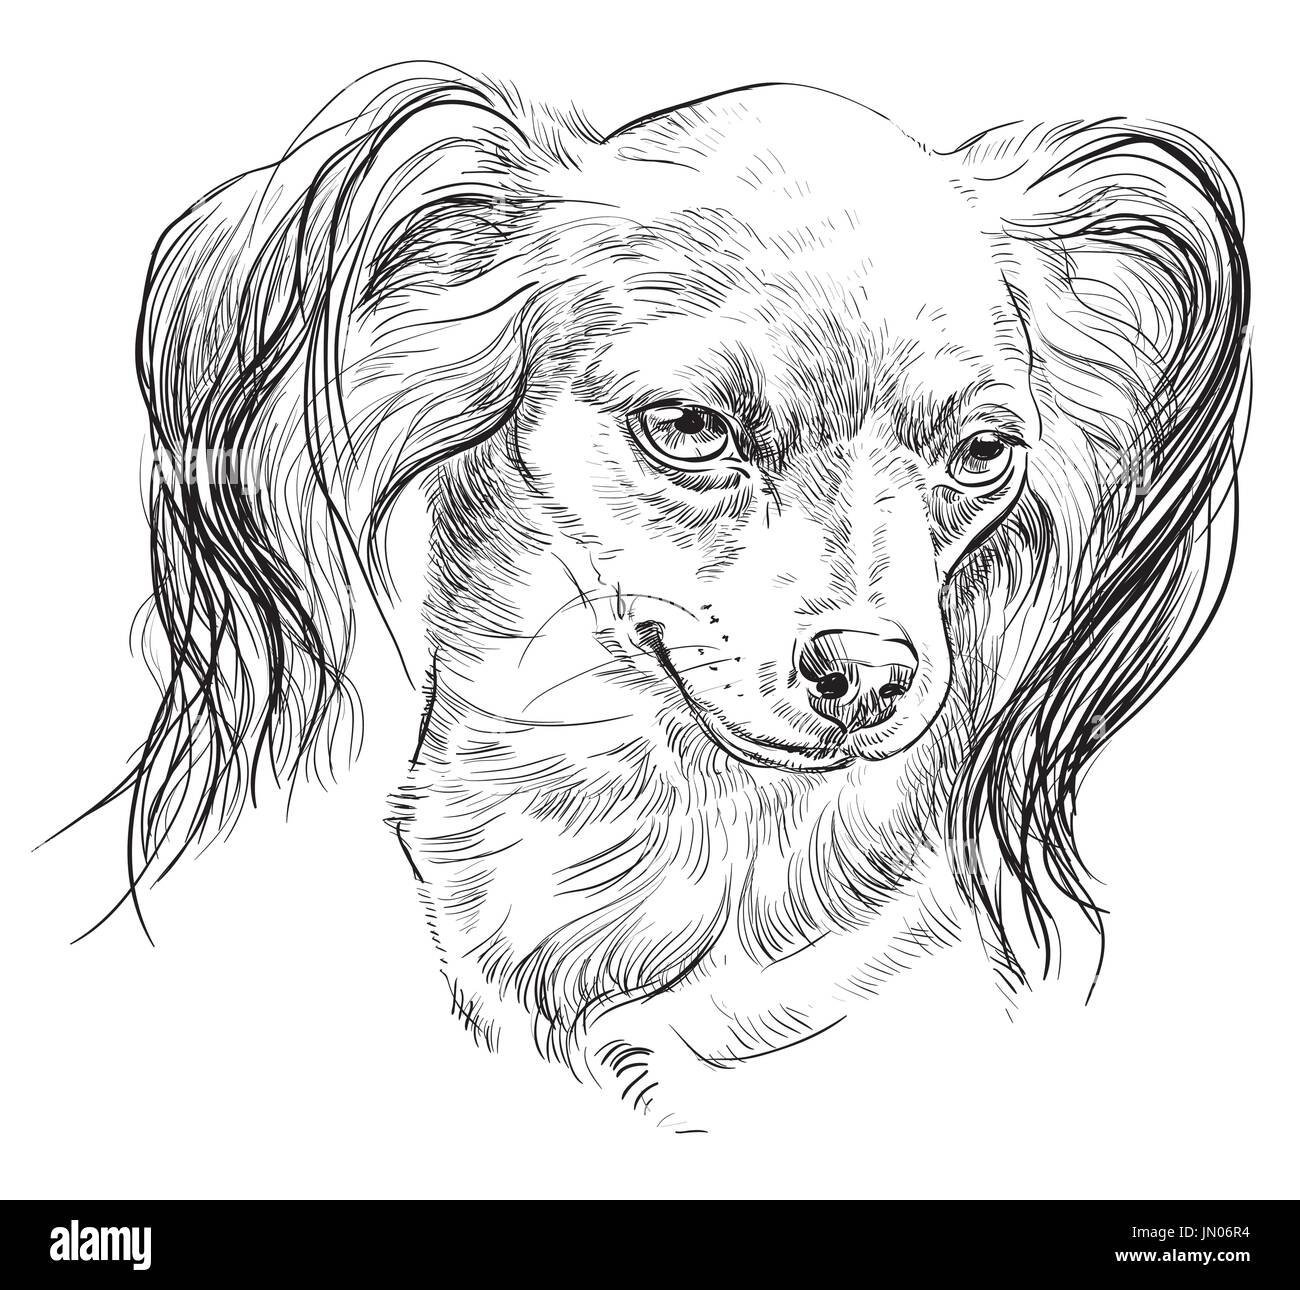 Vektor Umriss Porträt des russischen langhaarigen Toy Terrier in schwarzer Farbe hand Zeichnung Illustration auf weißem Hintergrund Stock Vektor